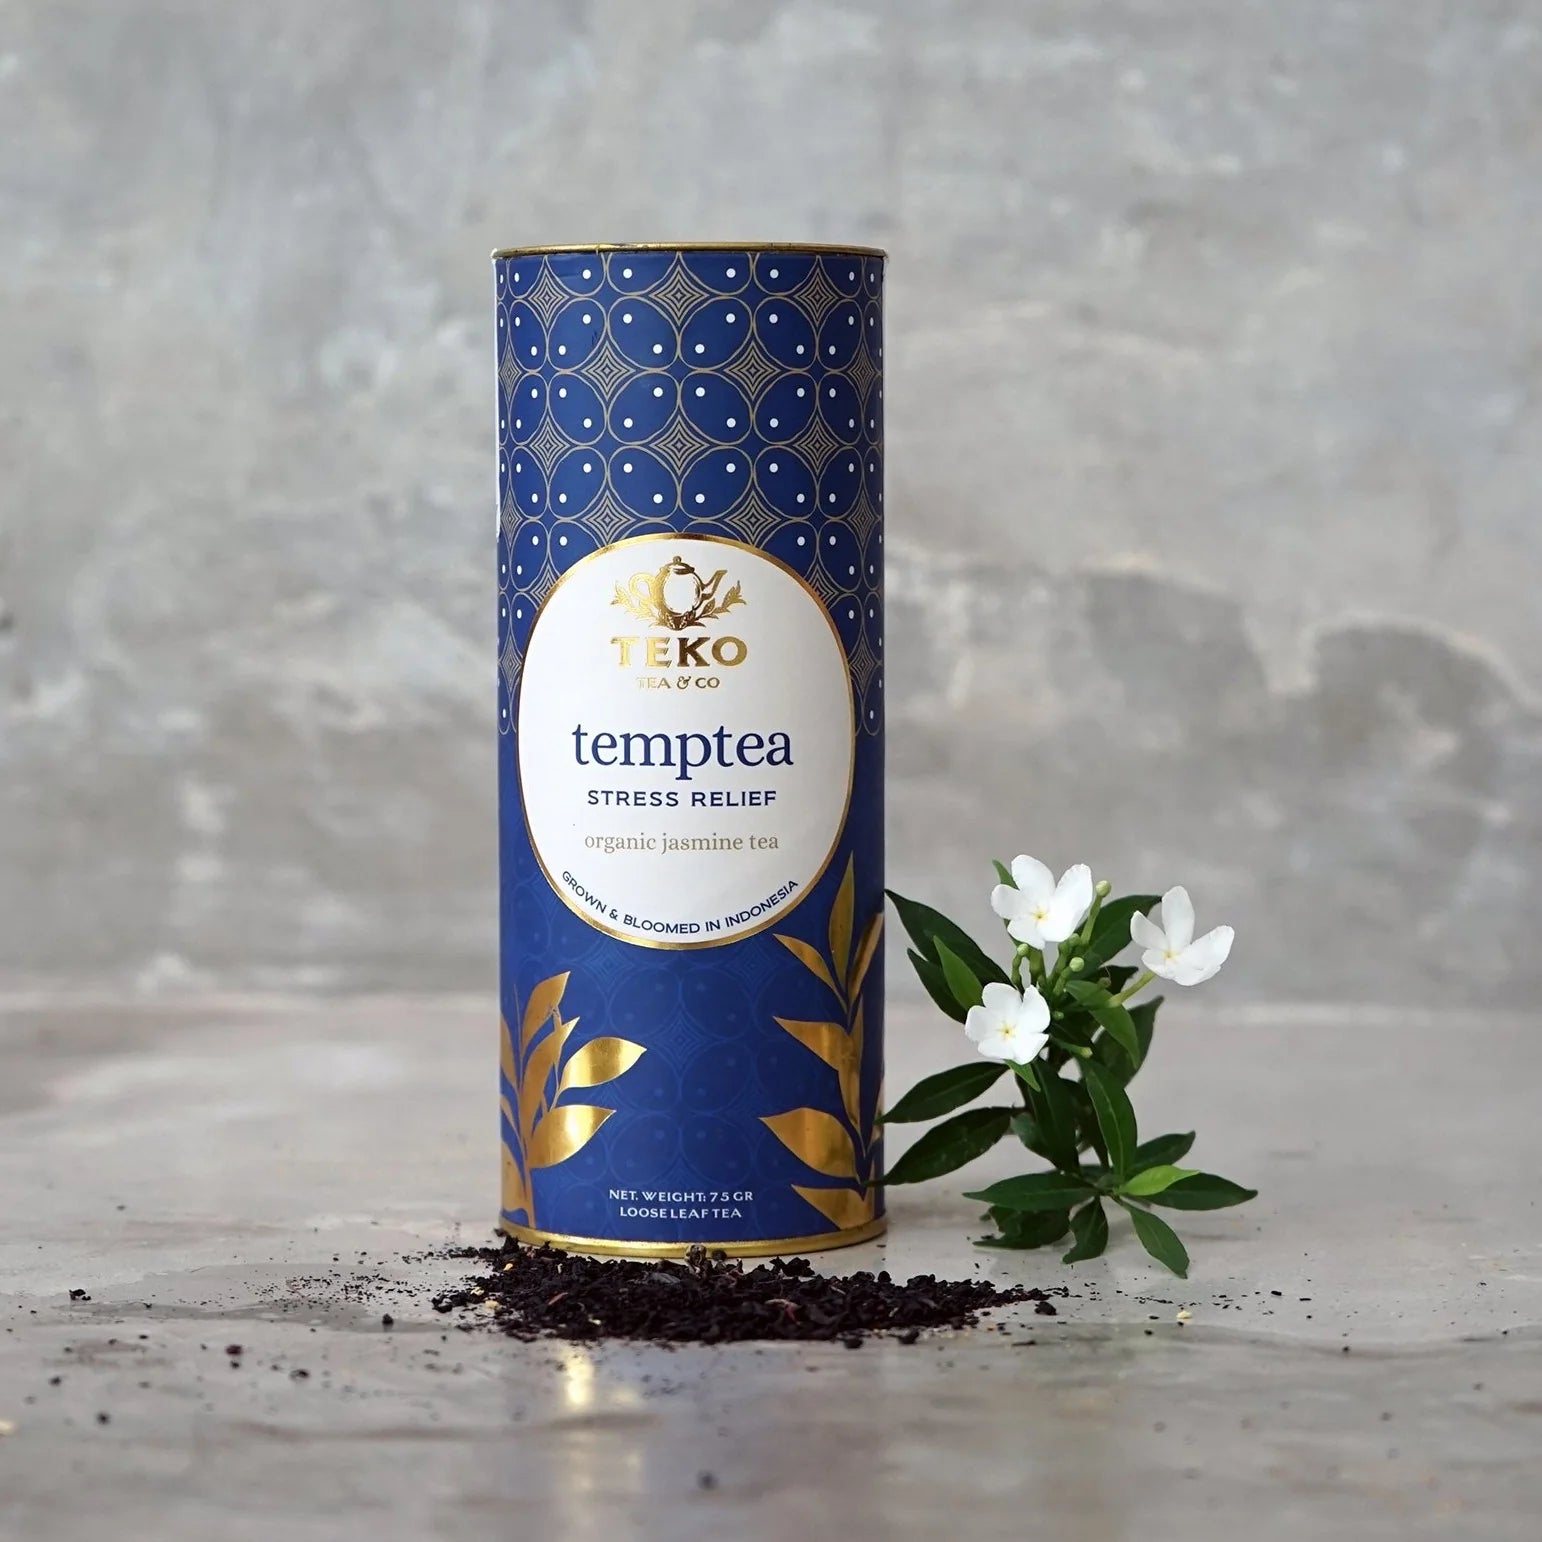 Teko Temptea - Teabags in Tubes